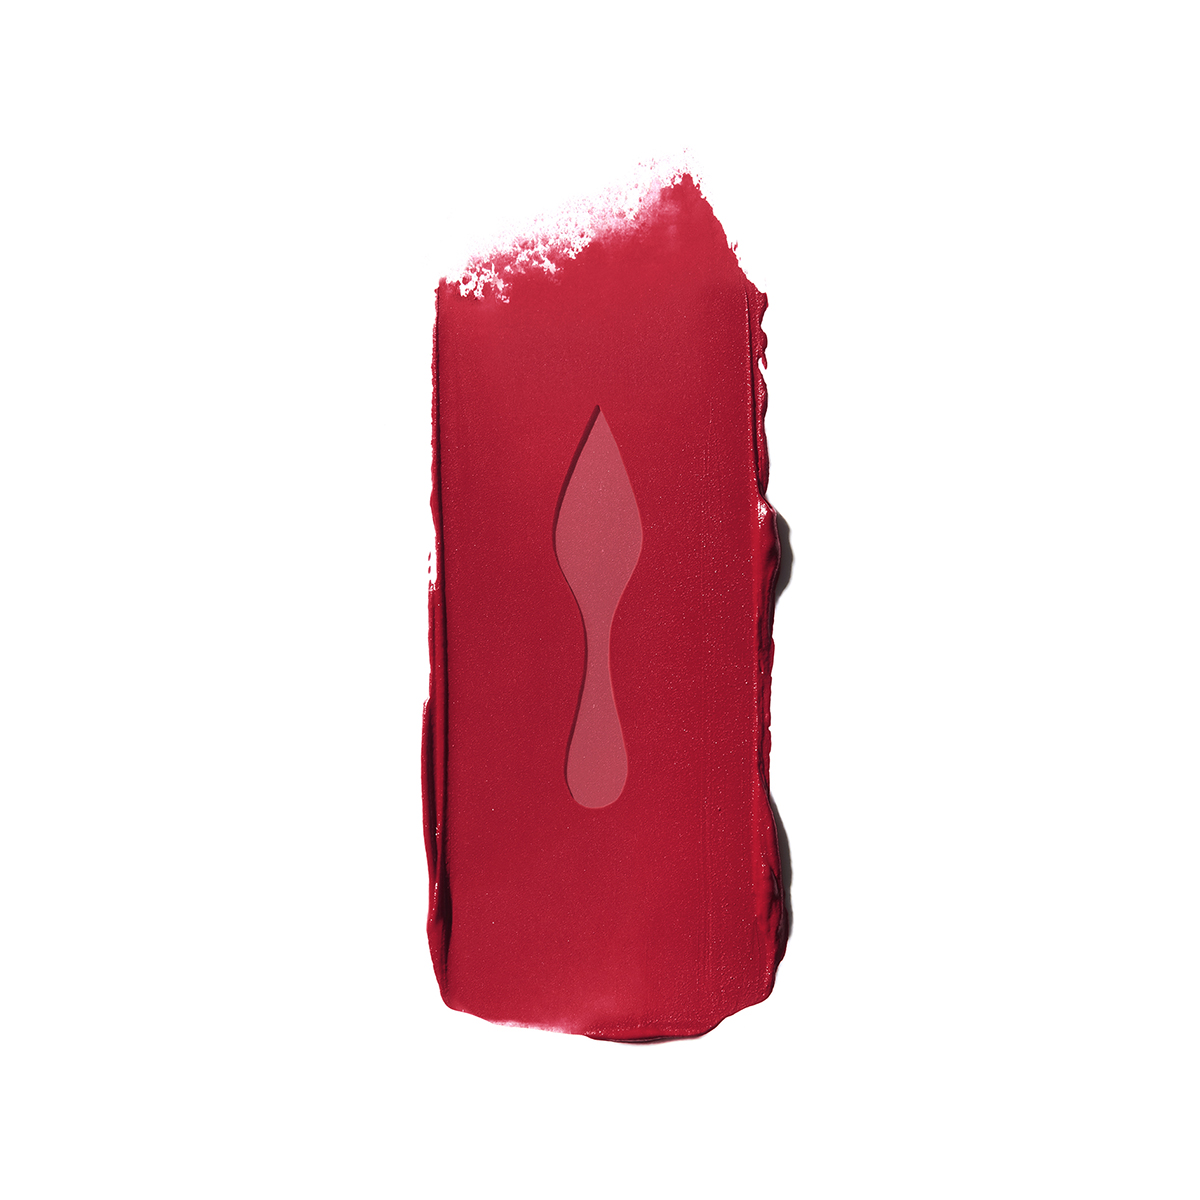 rouge louboutin lipstick